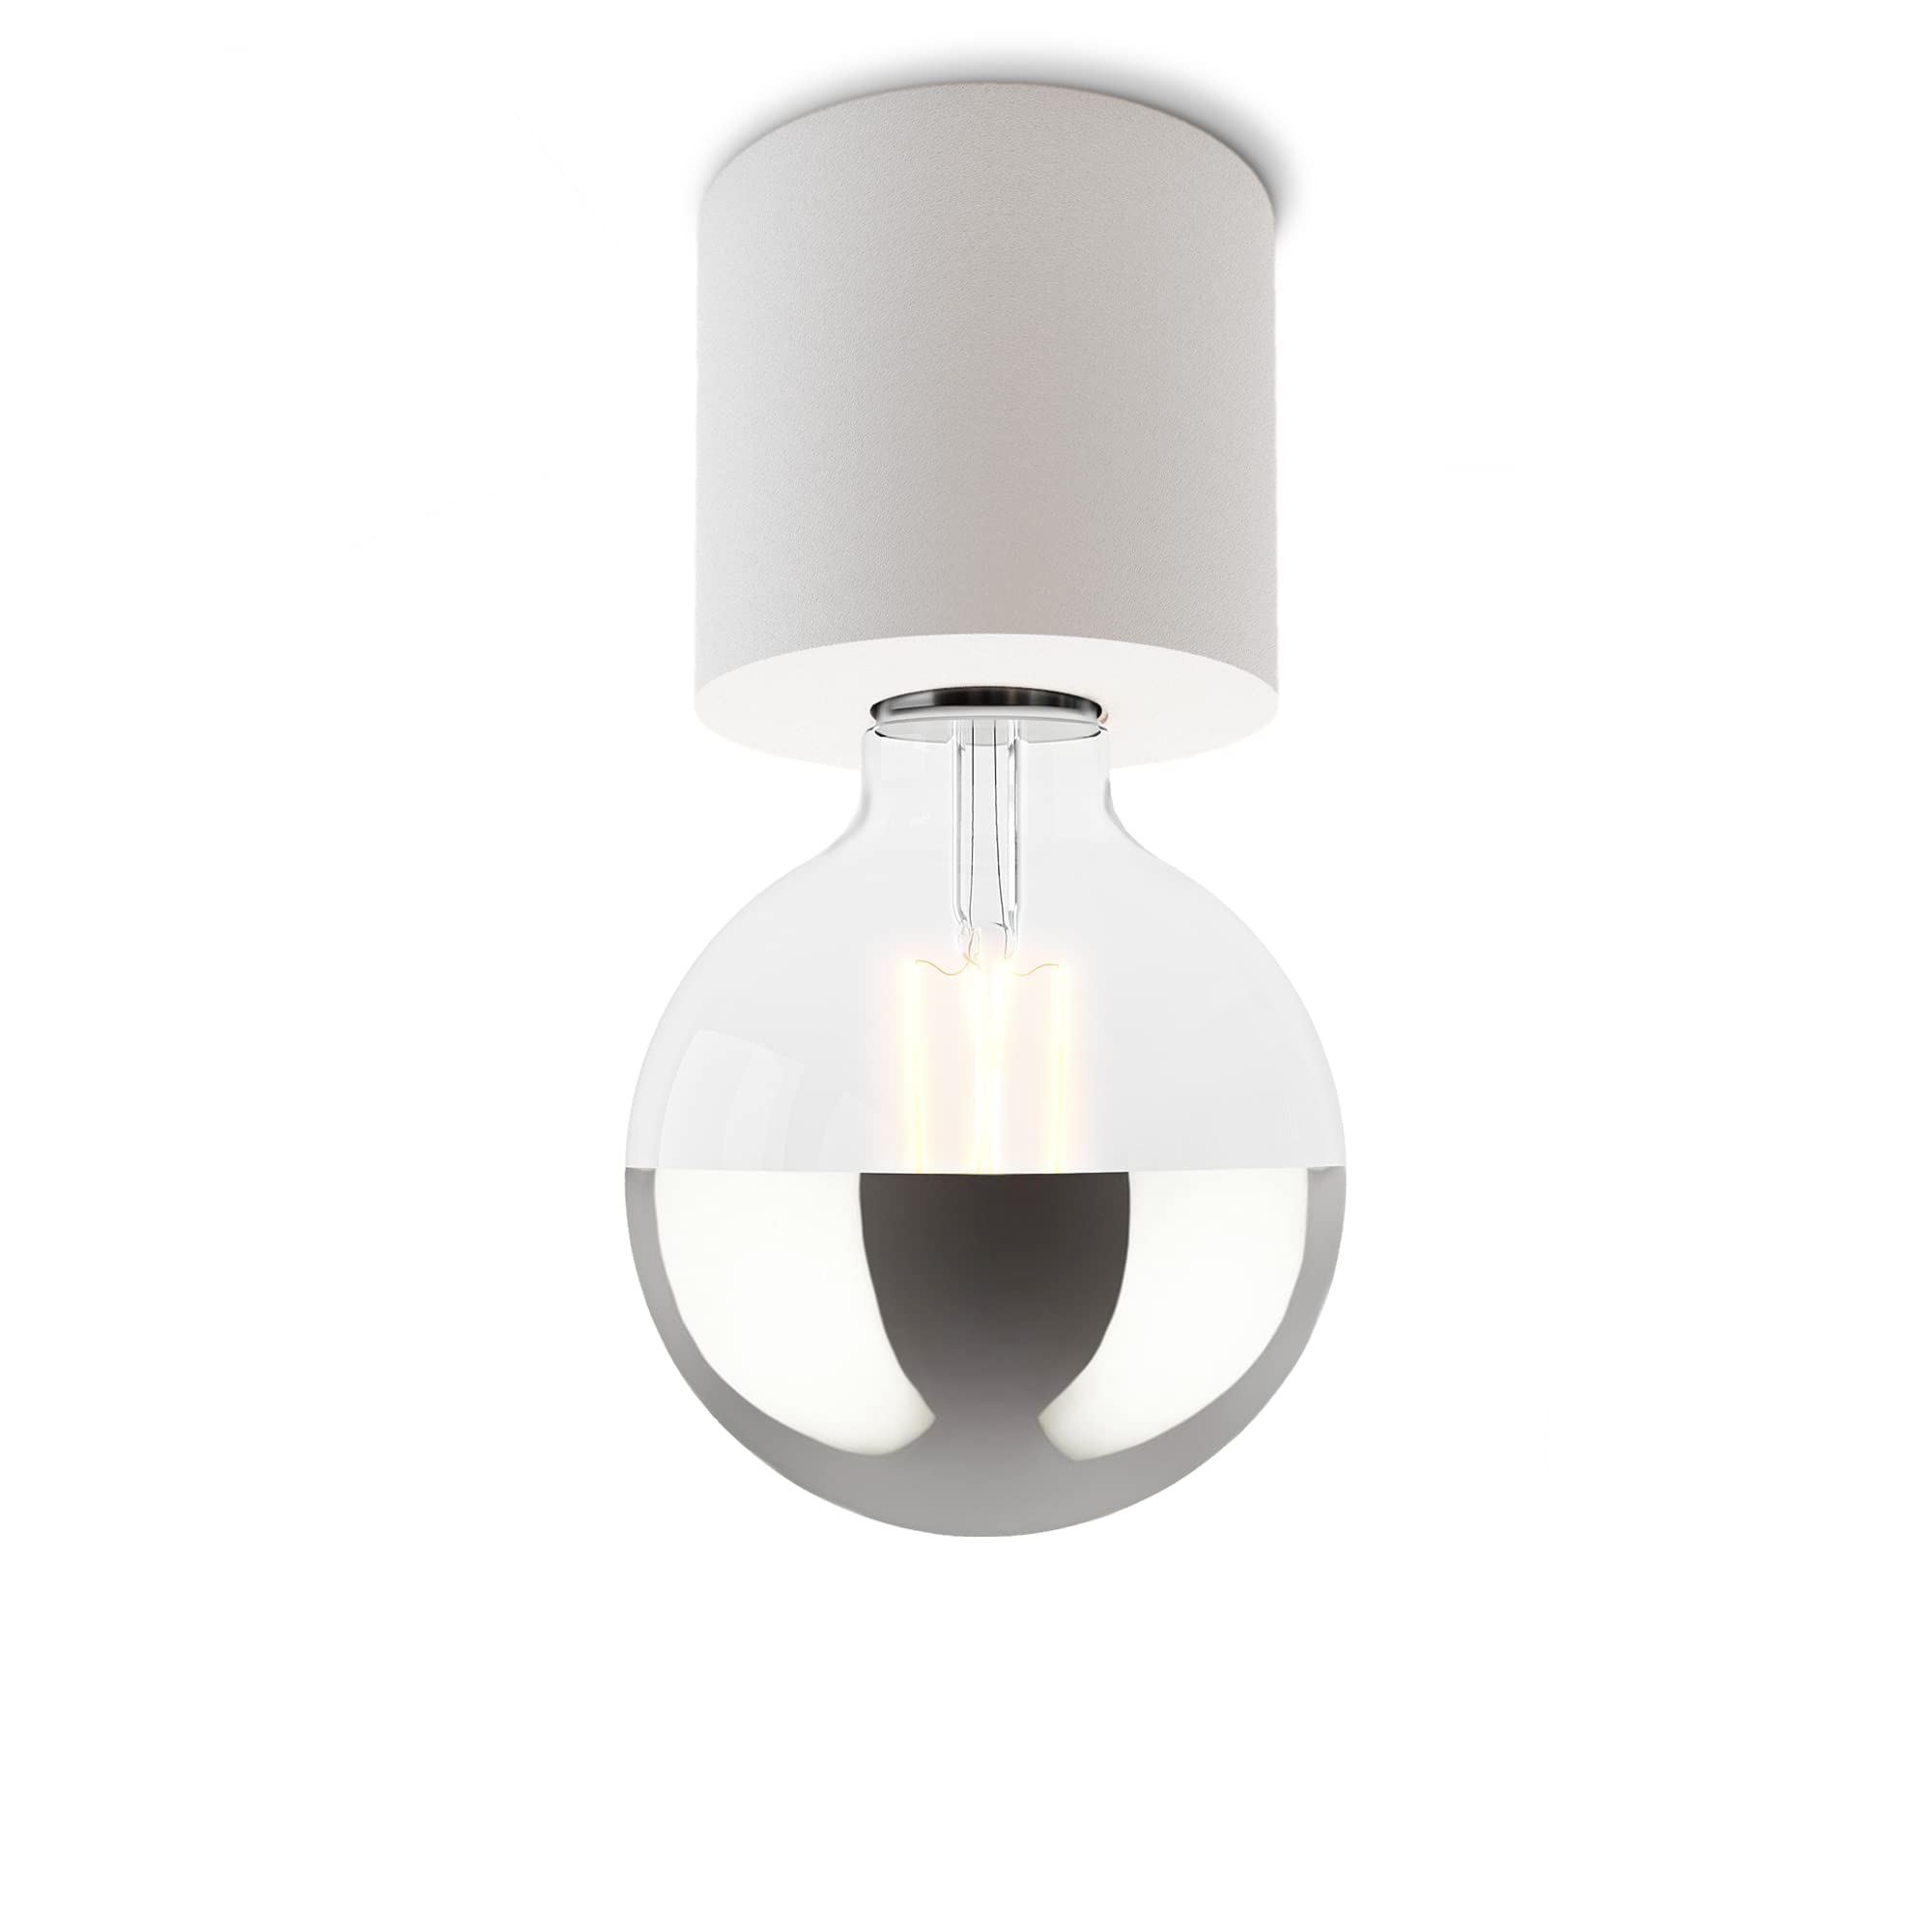 SSC-LUXon NAMBI Deckenlampe weiß rund E27 skandinavisches Design inkl. E27 Kopfspiegel LED Glühbirne - Deckenlicht warmweiß